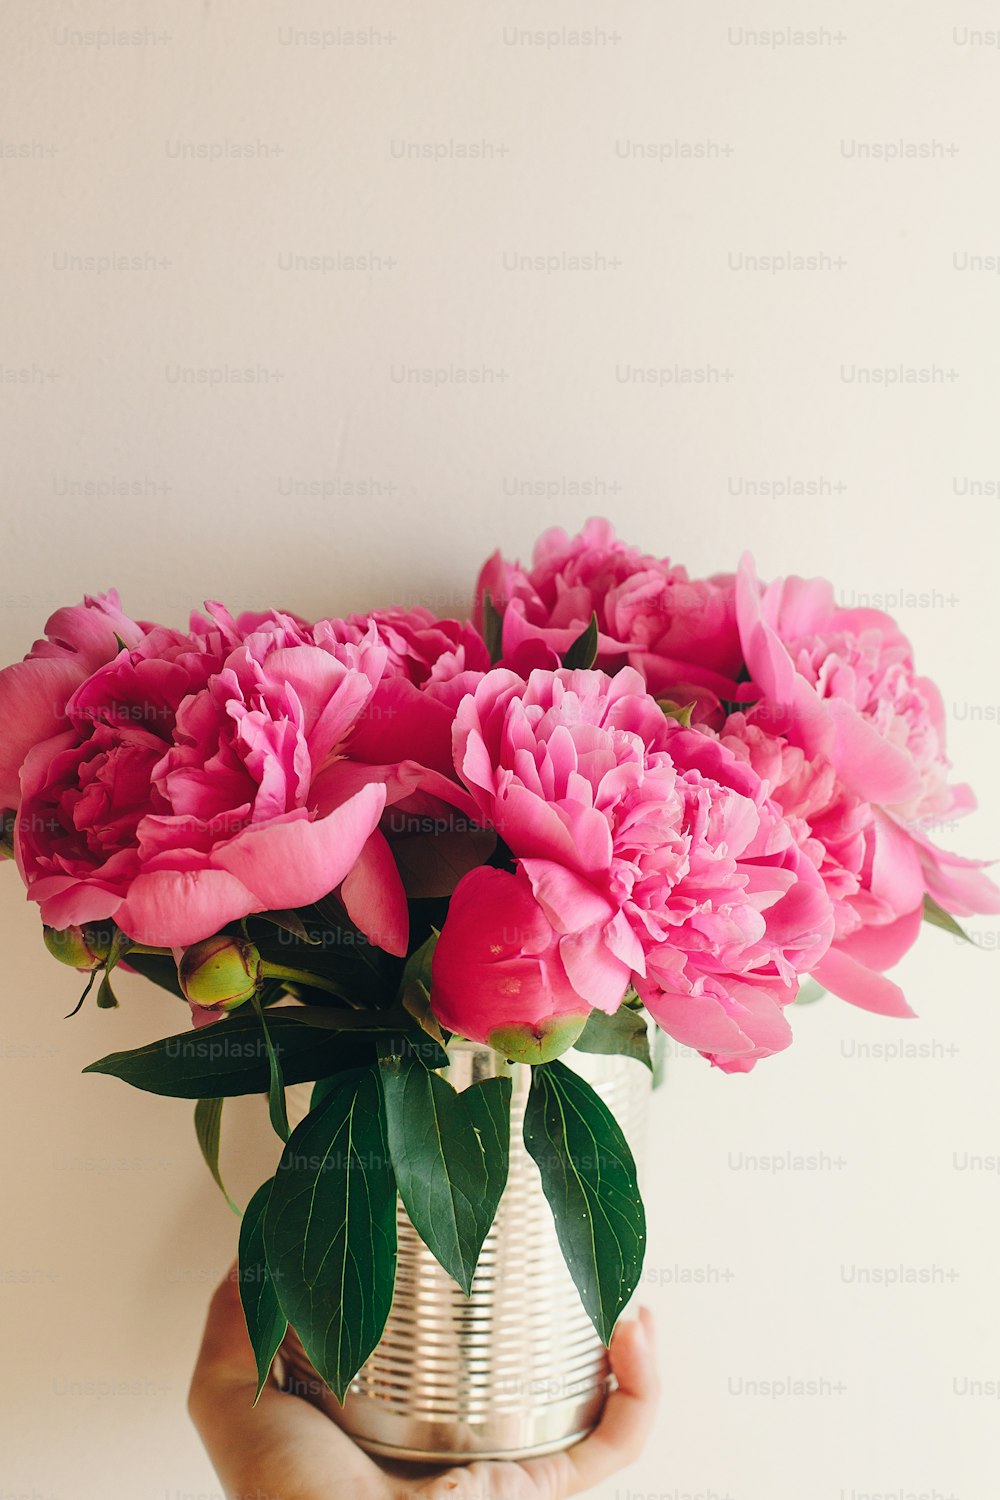 소박한 흰색 배경에 금속 캔에 분홍색 모란 꽃다발을 들고 있는 손, 텍스트를 위한 공간. 꽃 인사말 카드 모형. 해피 어머니의 날 개념입니다. 핑크 꽃, 시골 이미지